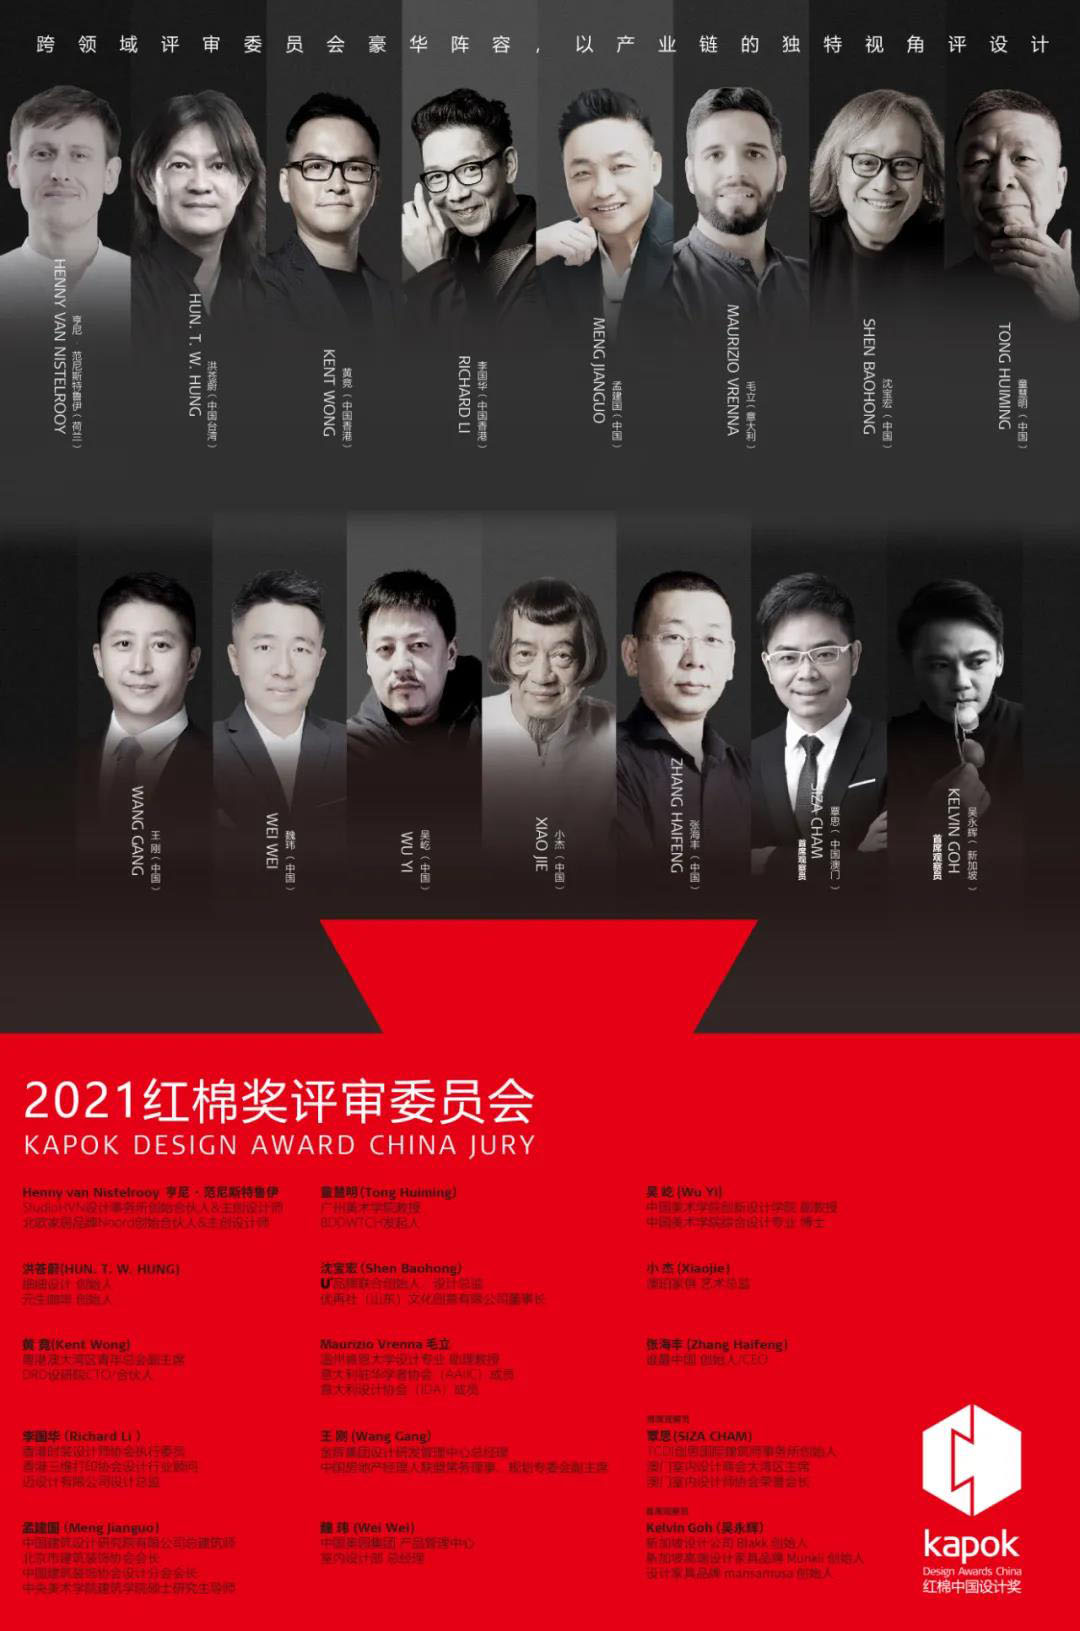 SSWW Won Kapok Design Awards China 2021 (9)